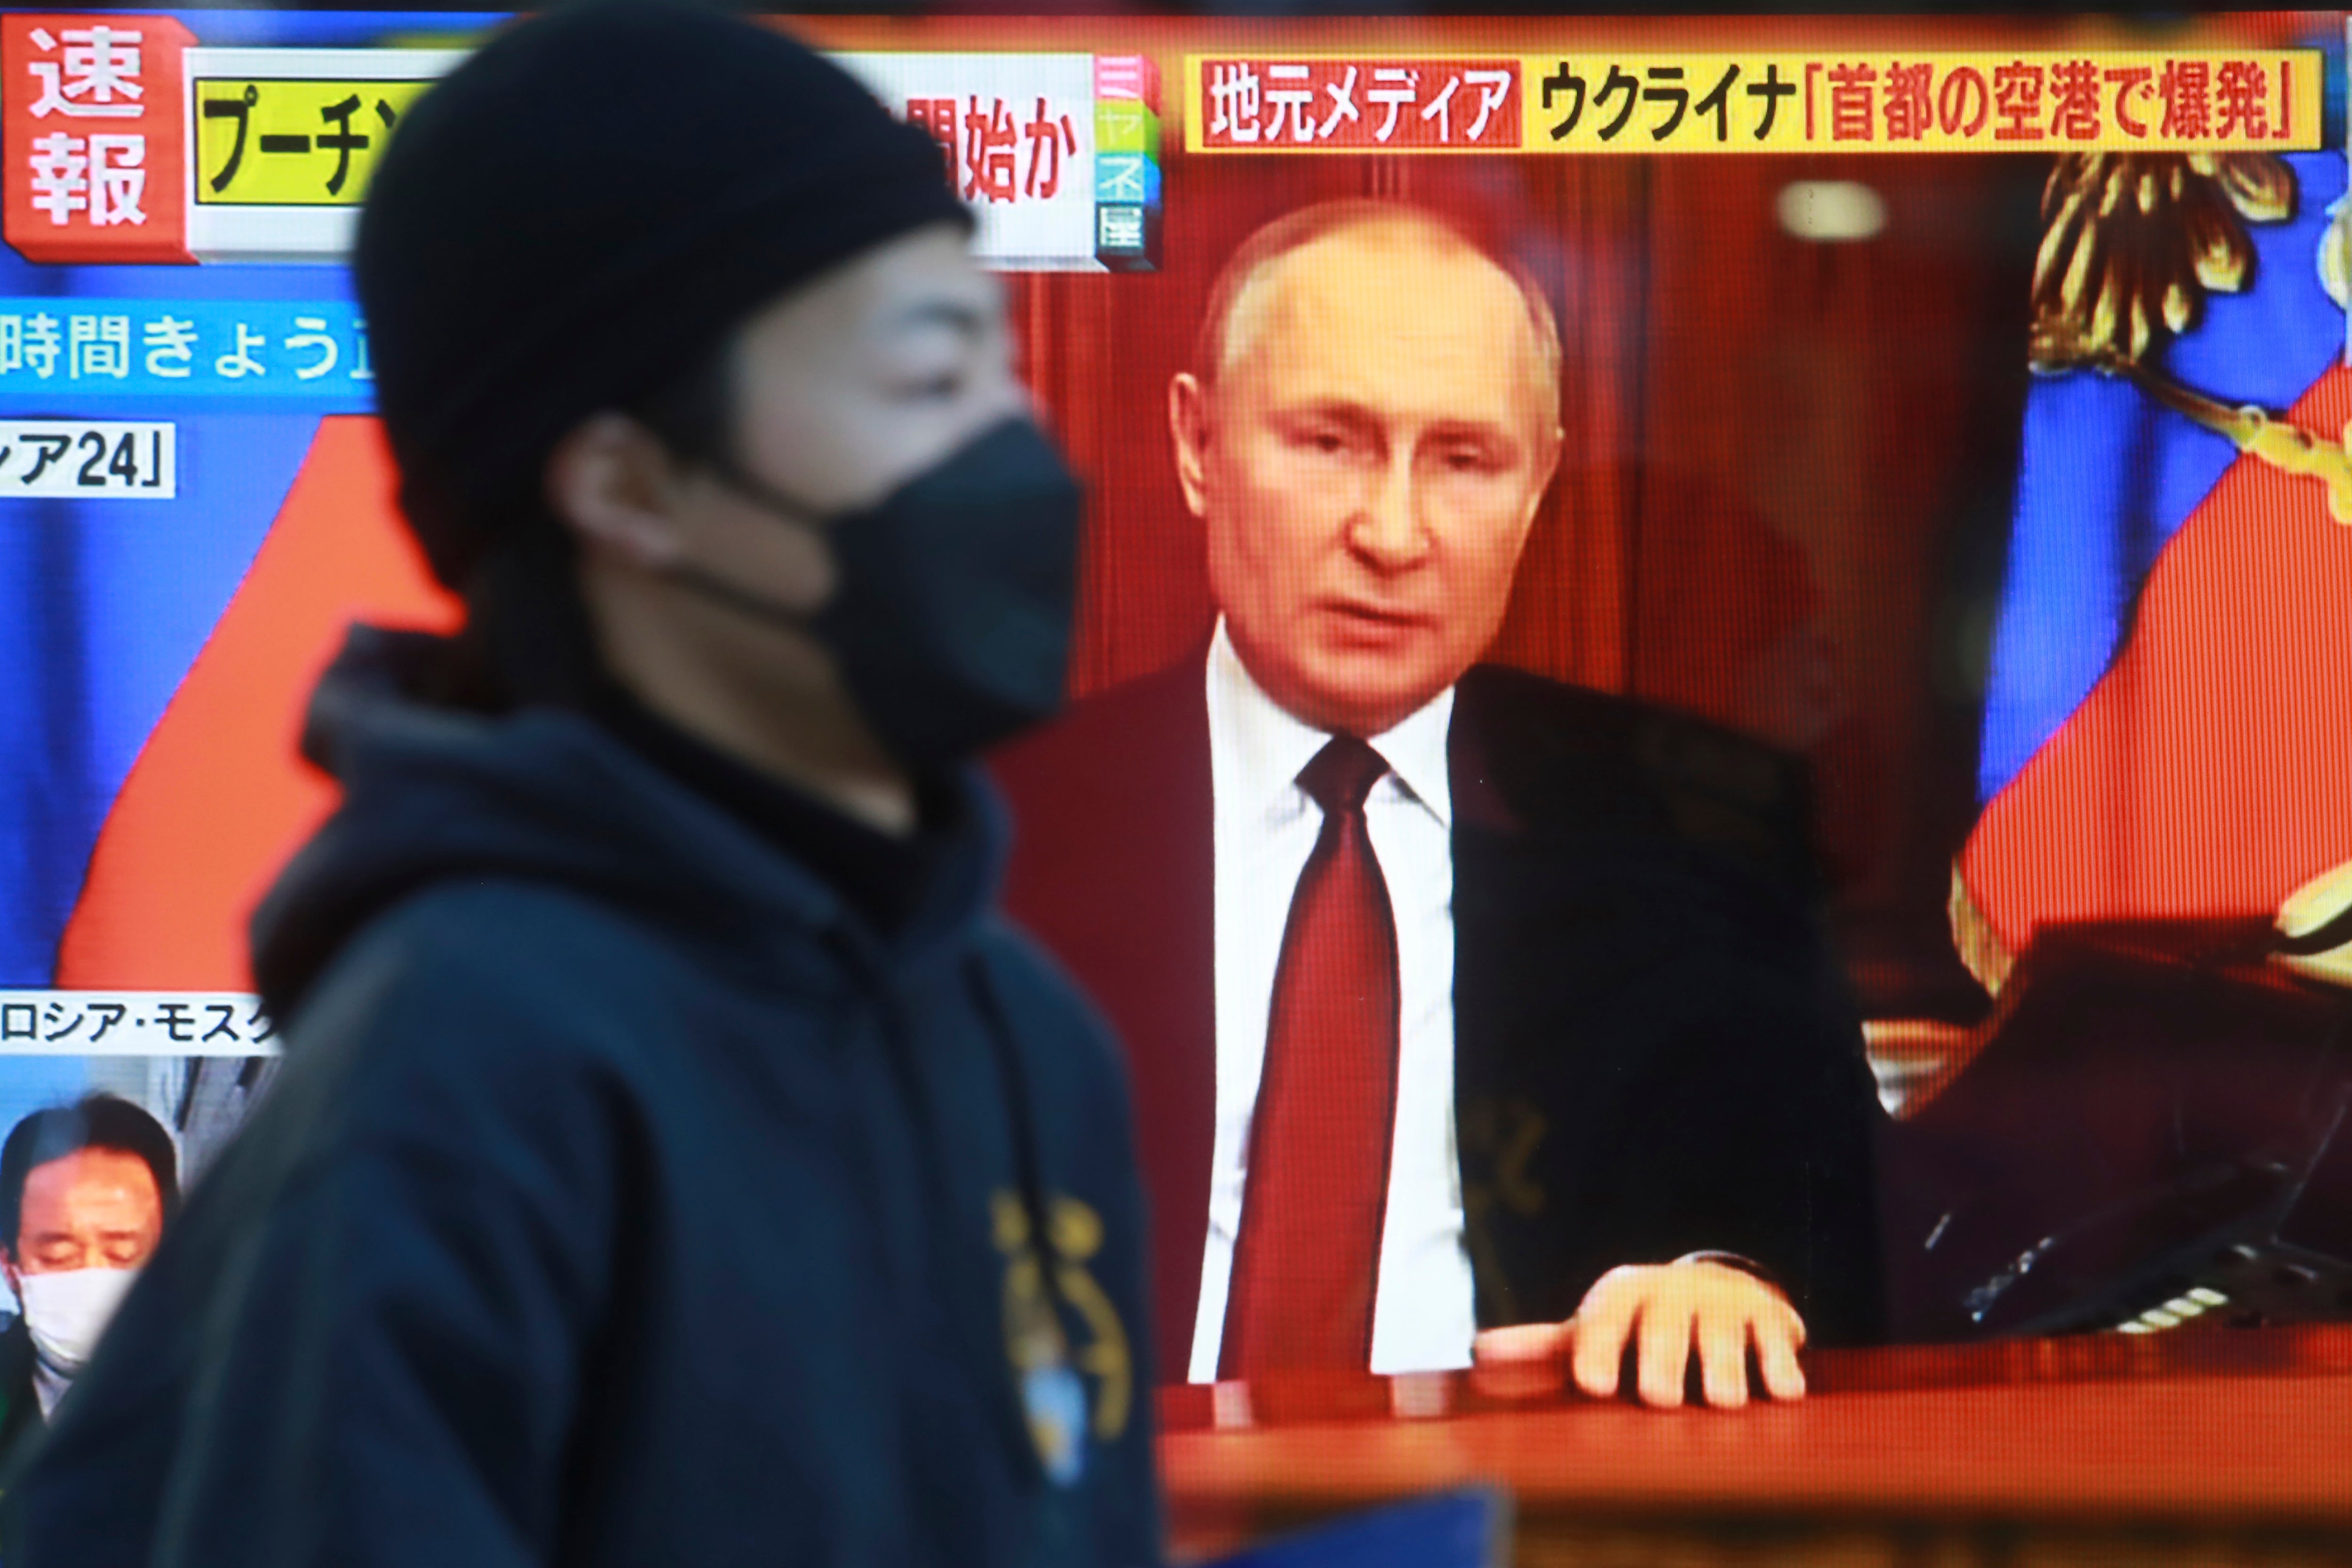 Япония ввела санкции против. Родственники Путина. Фото Путина 2022. Санкции Японии против России. Фотографии Путина 2022 года.